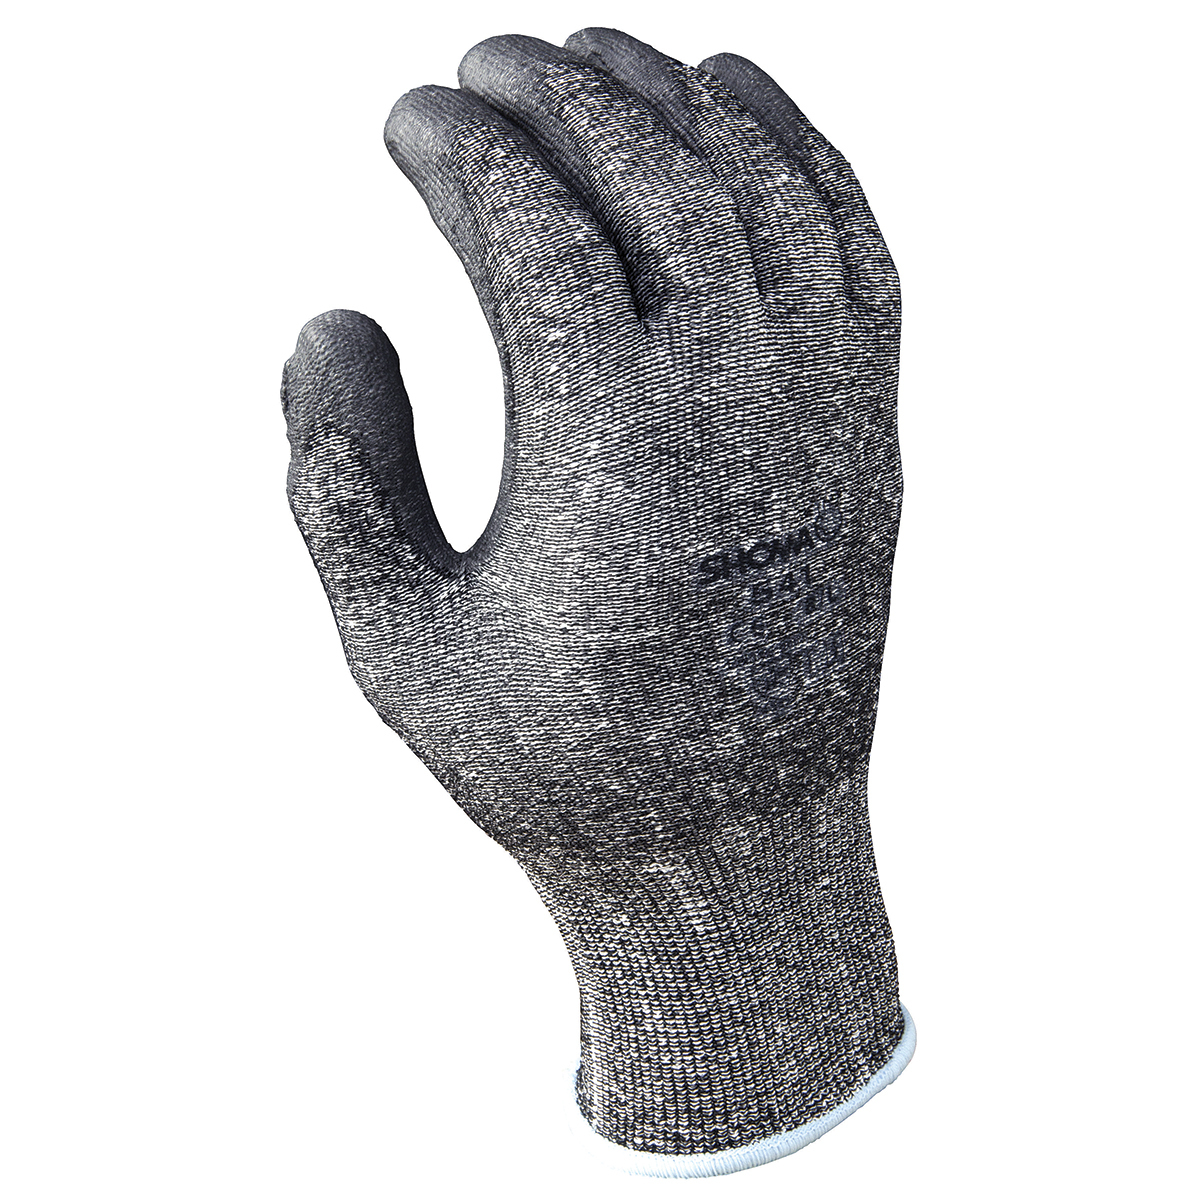 SHOWA® Large 541 13 Gauge High Performance Polyethylene Cut Resistant Gloves With Polyurethane Coating